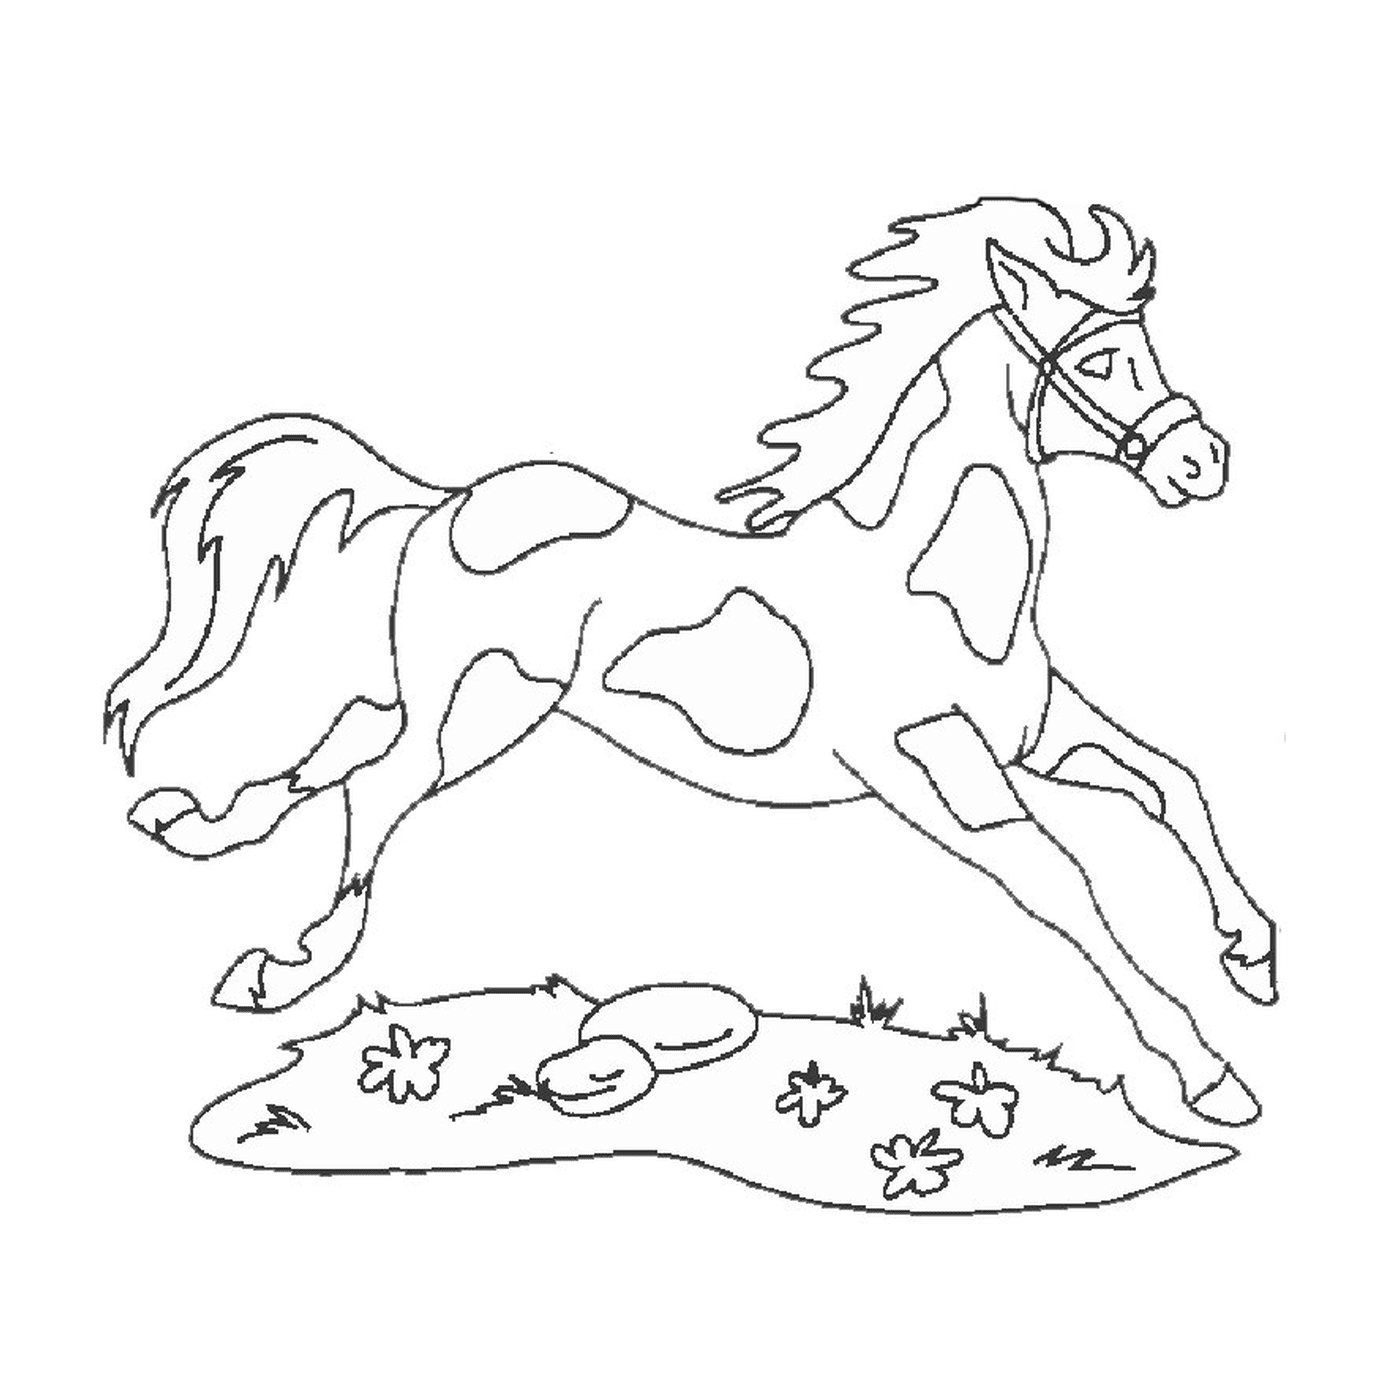  Caballo y perro - Un caballo corriendo 